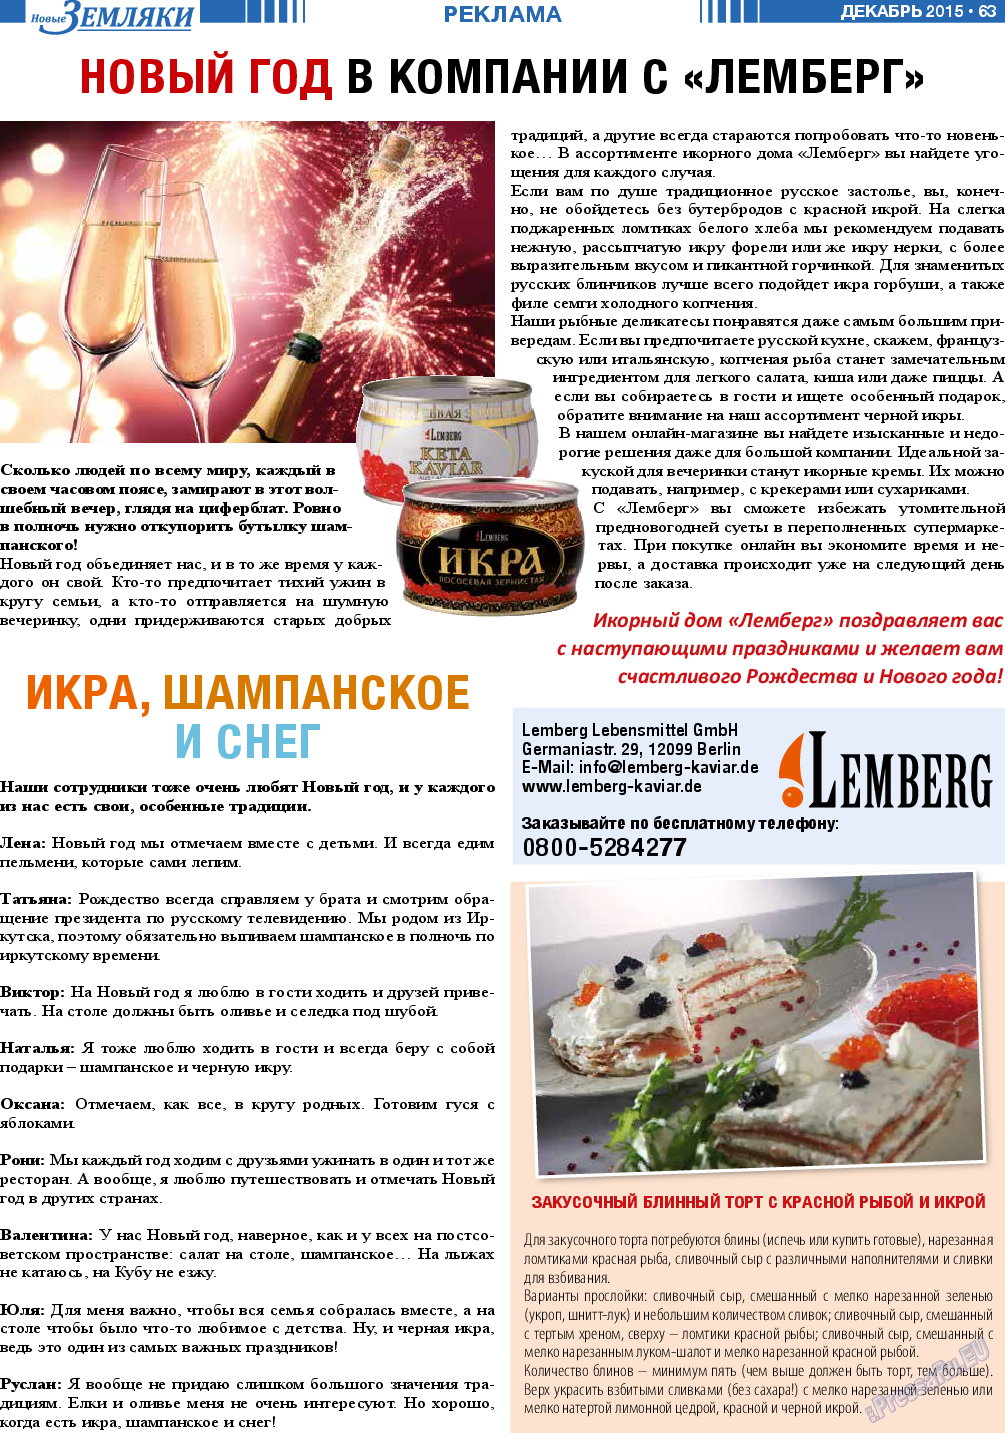 Новые Земляки, газета. 2015 №12 стр.63